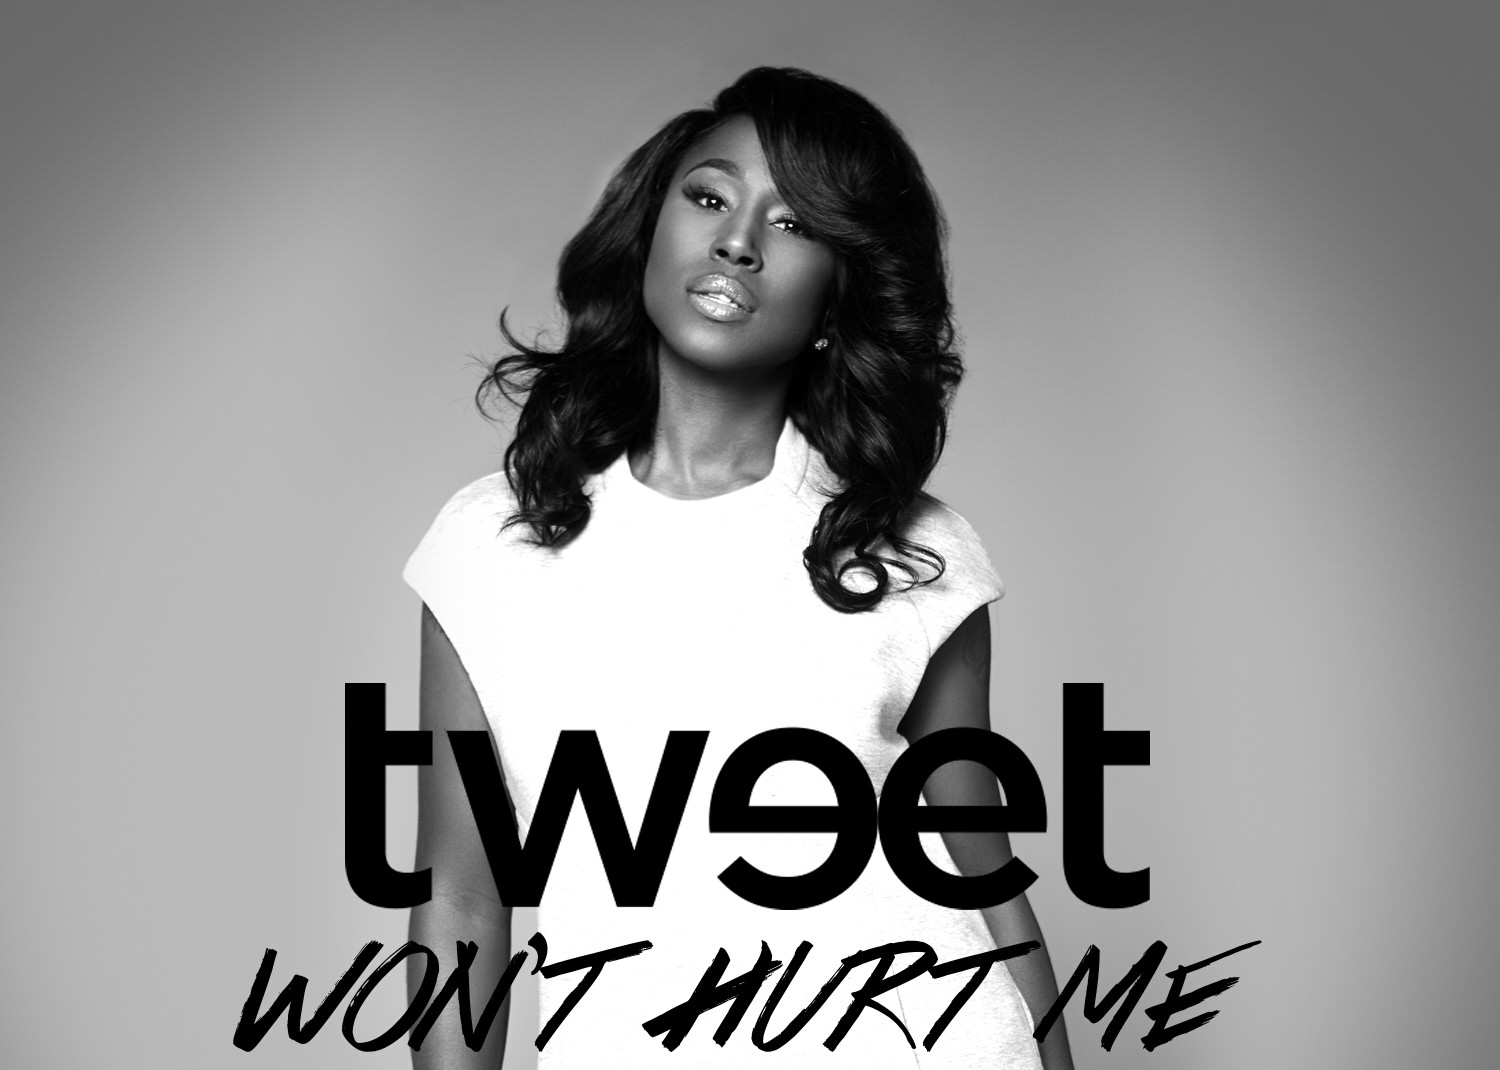 New Video: Tweet "Won't Hurt Me"